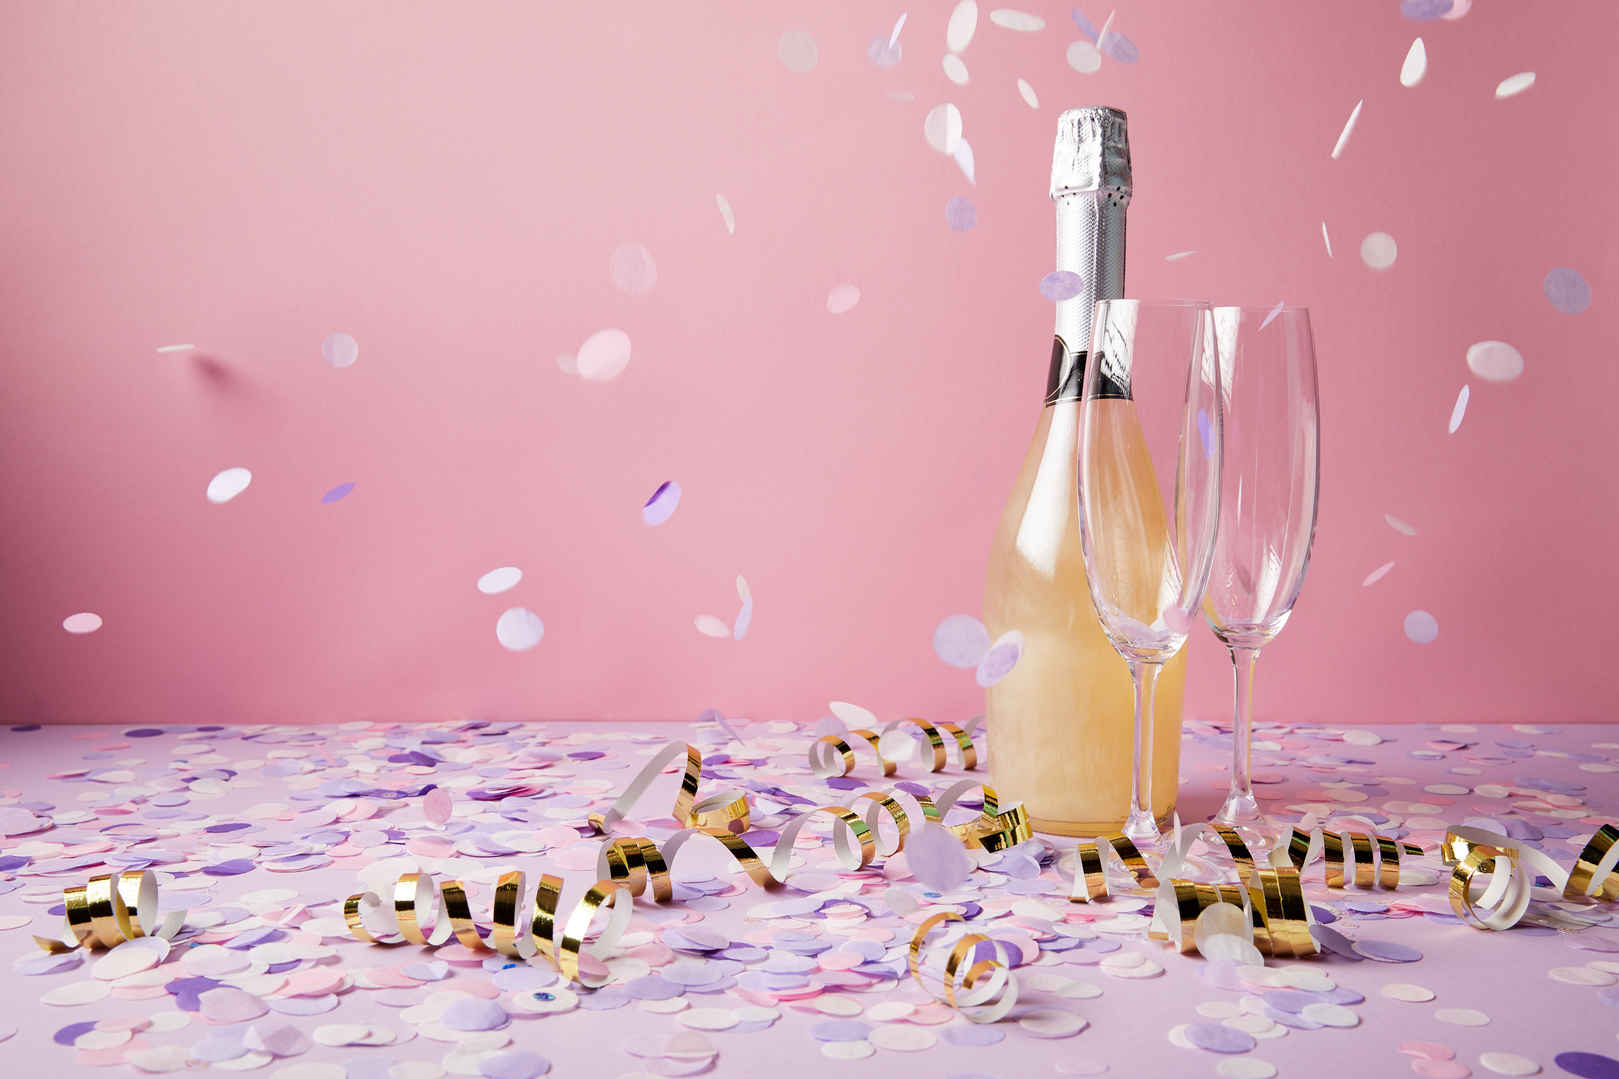 一瓶香槟和玻璃杯在紫罗兰表面上掉落着纸屑片-